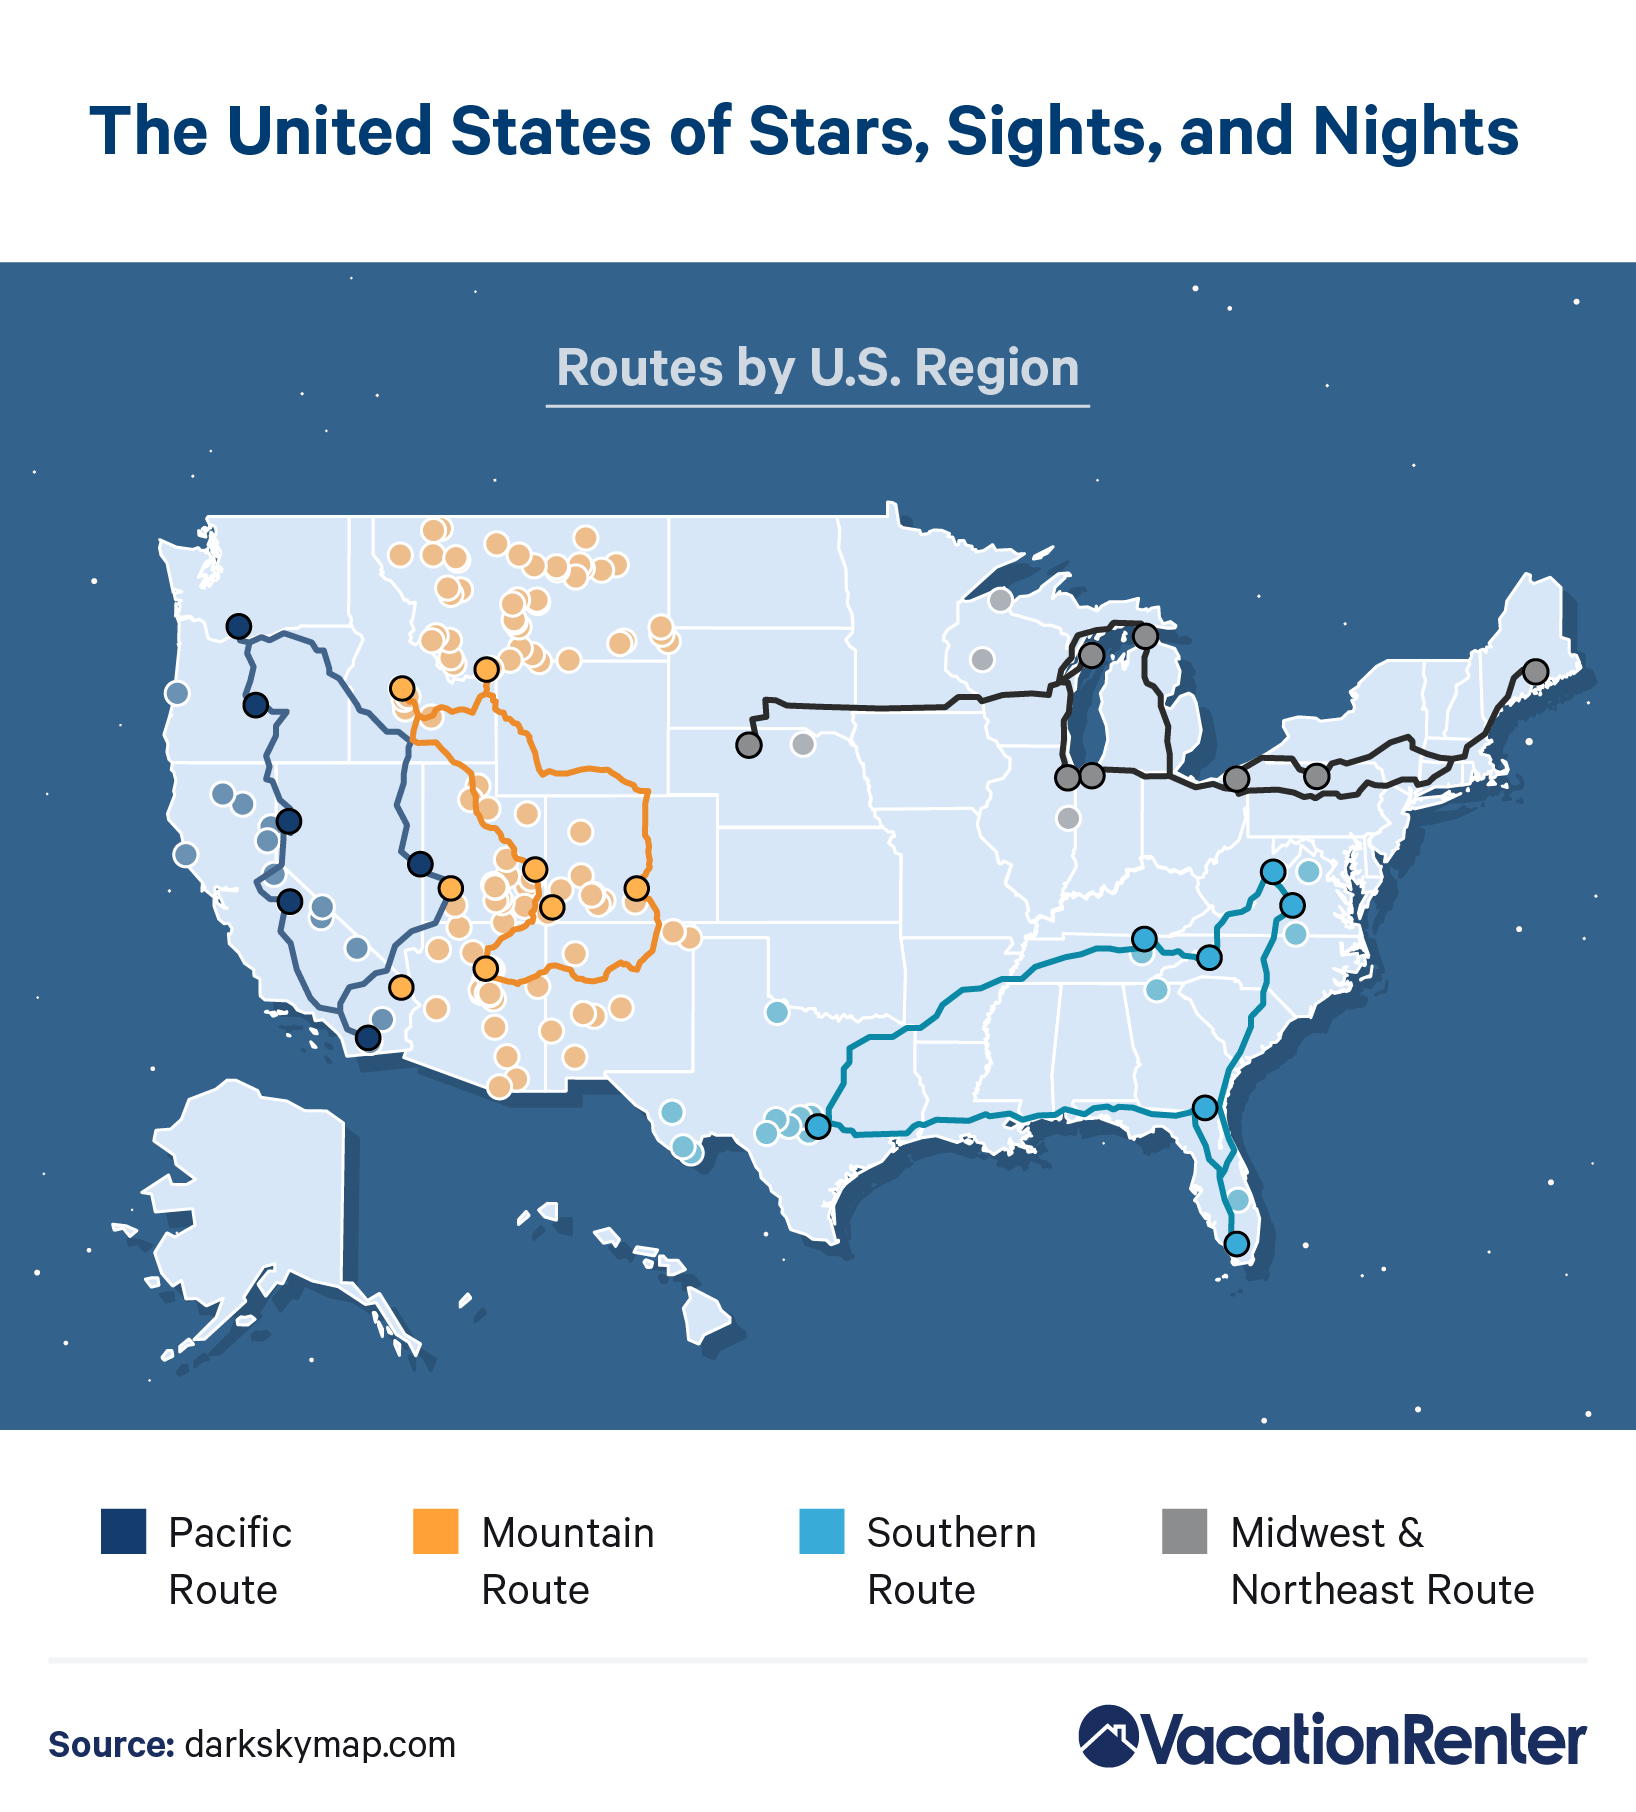 Darkest sky routes by U.S. region.